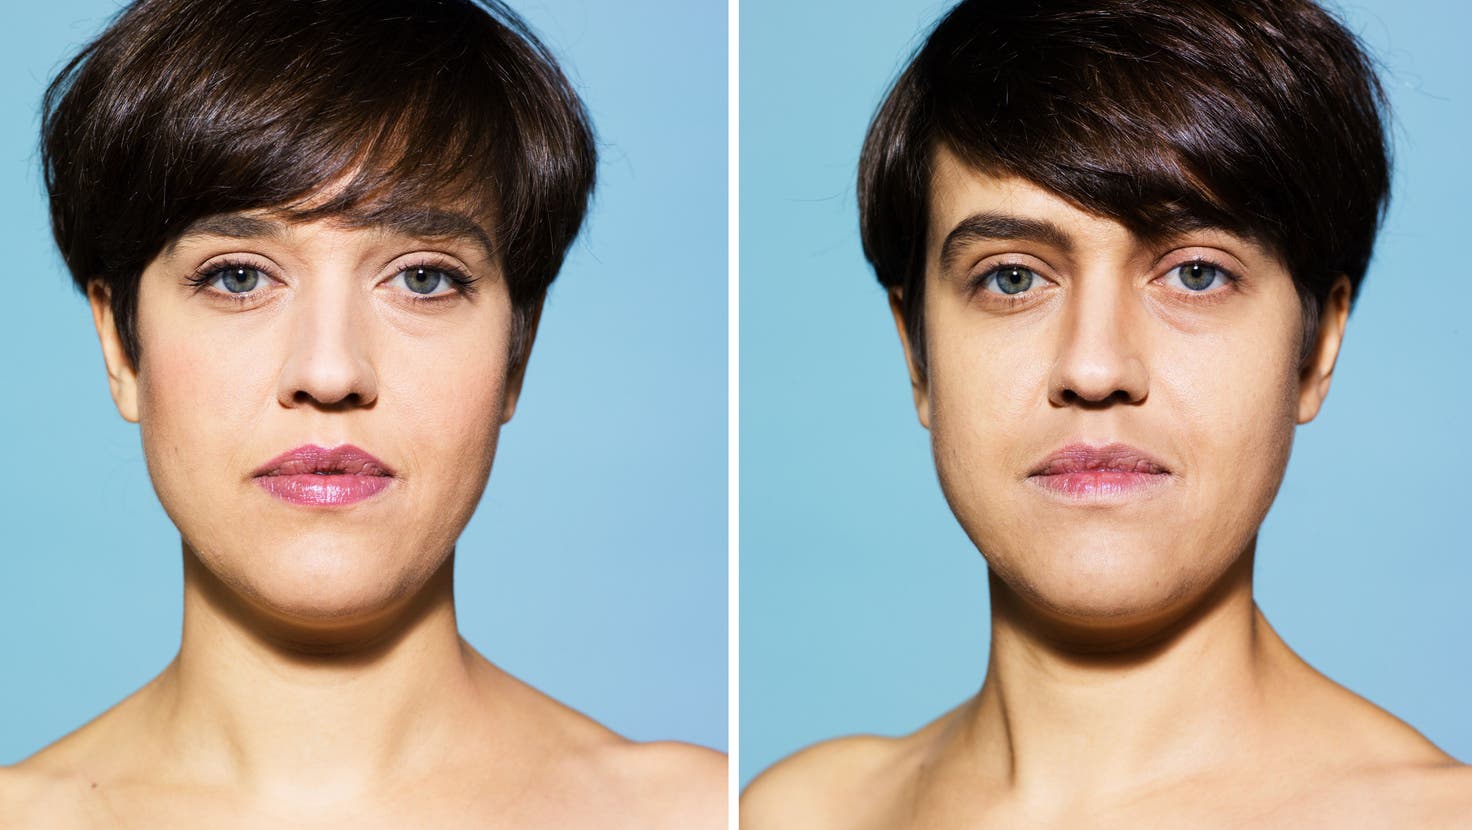 Männlich oder weiblich? Zweimal dasselbe Model, unterschiedlich gestylt. (Bild: Massimo Giovannini / Plainpicture)